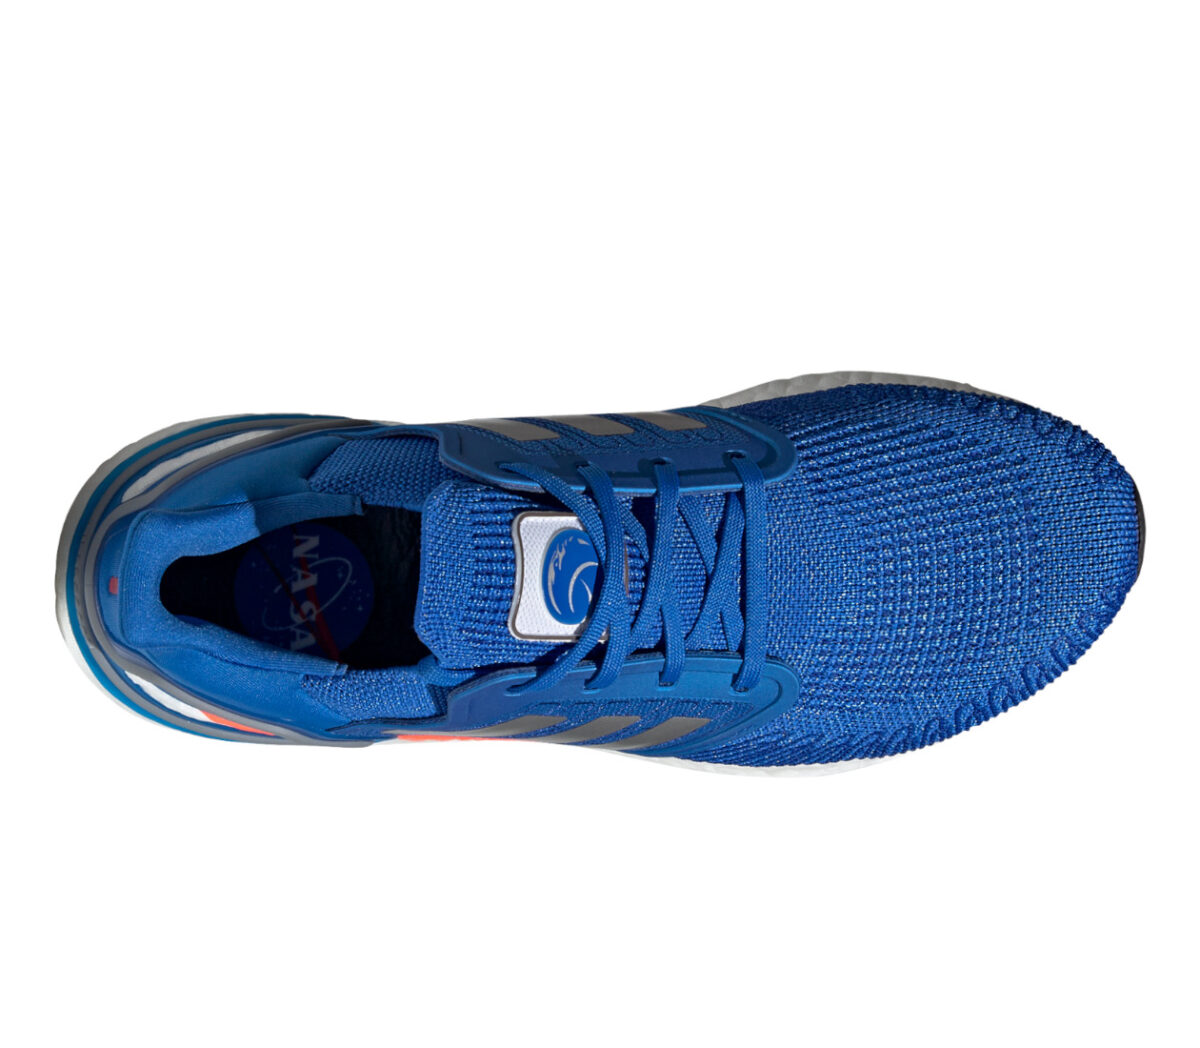 tomaia scarpa da running adidas ultraboost 20 blu NASA uomo